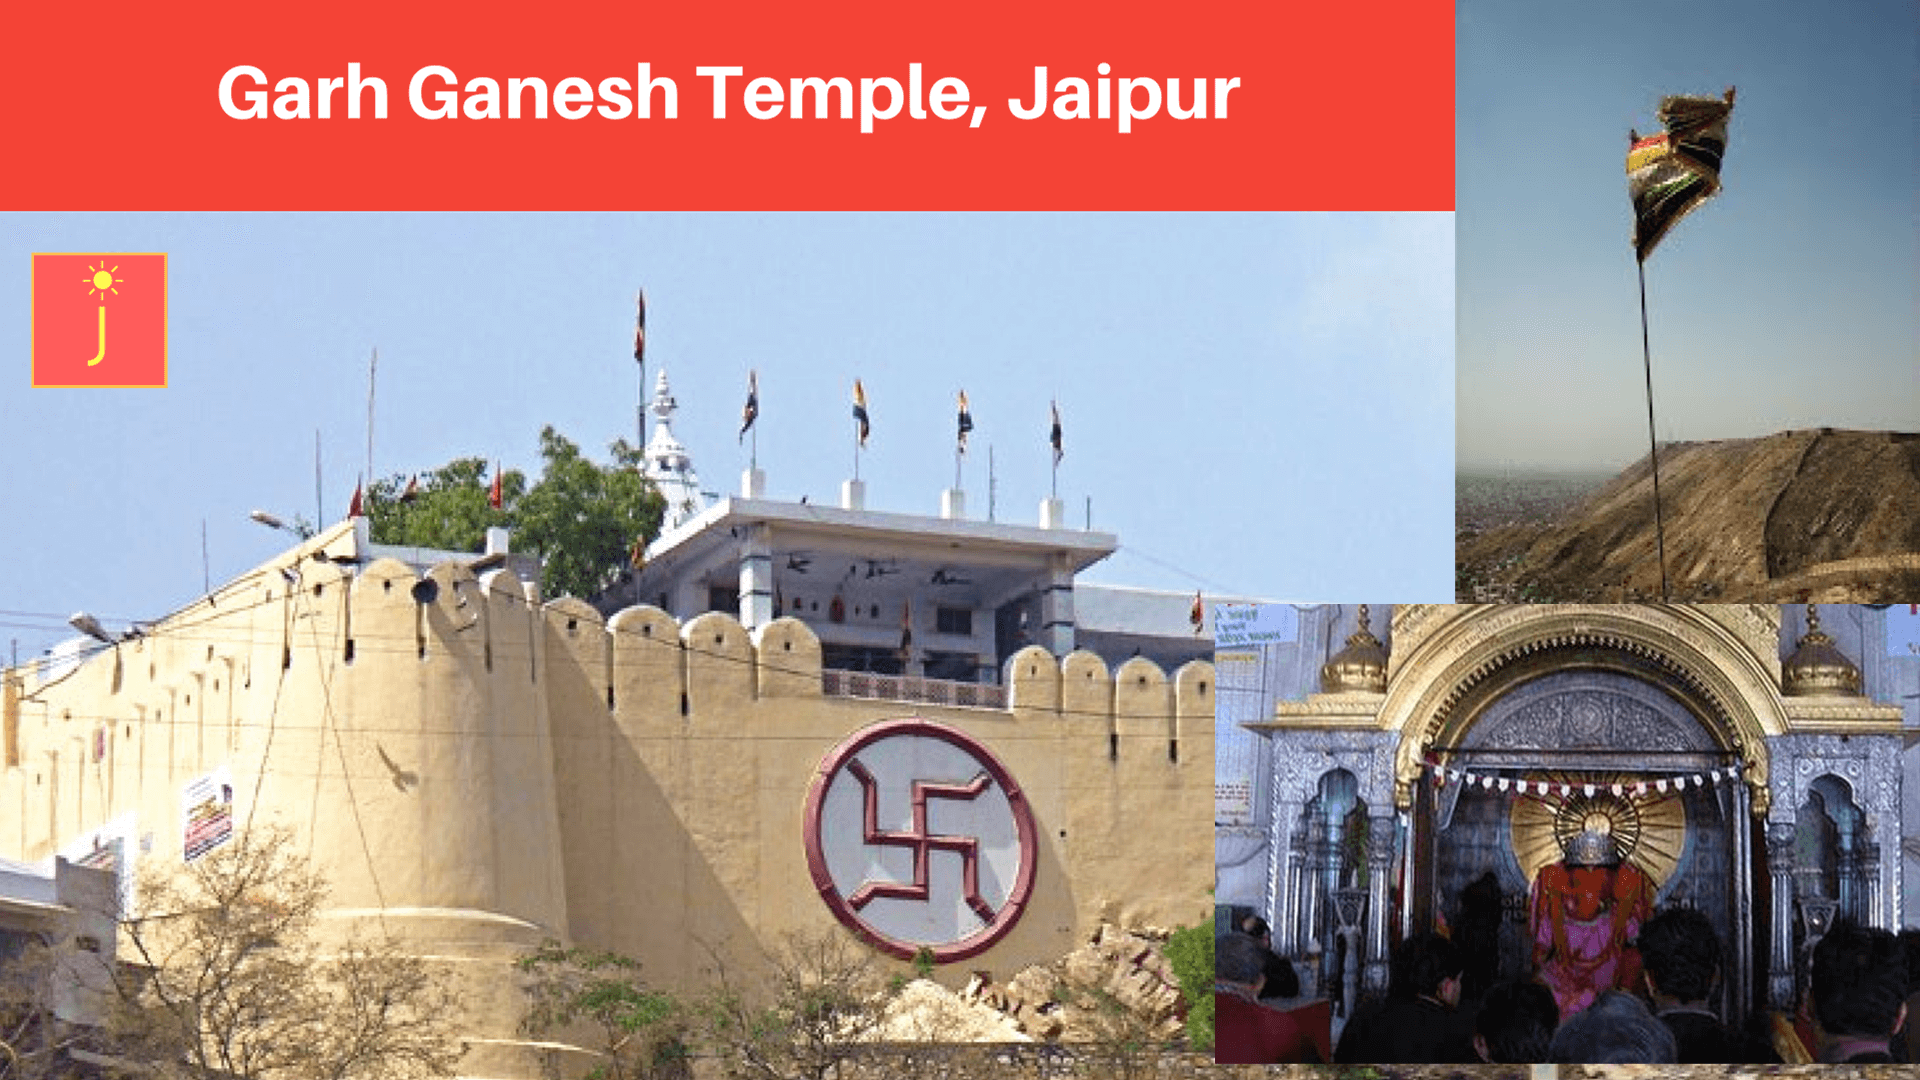 Garh Ganesh Temple, Jaipur